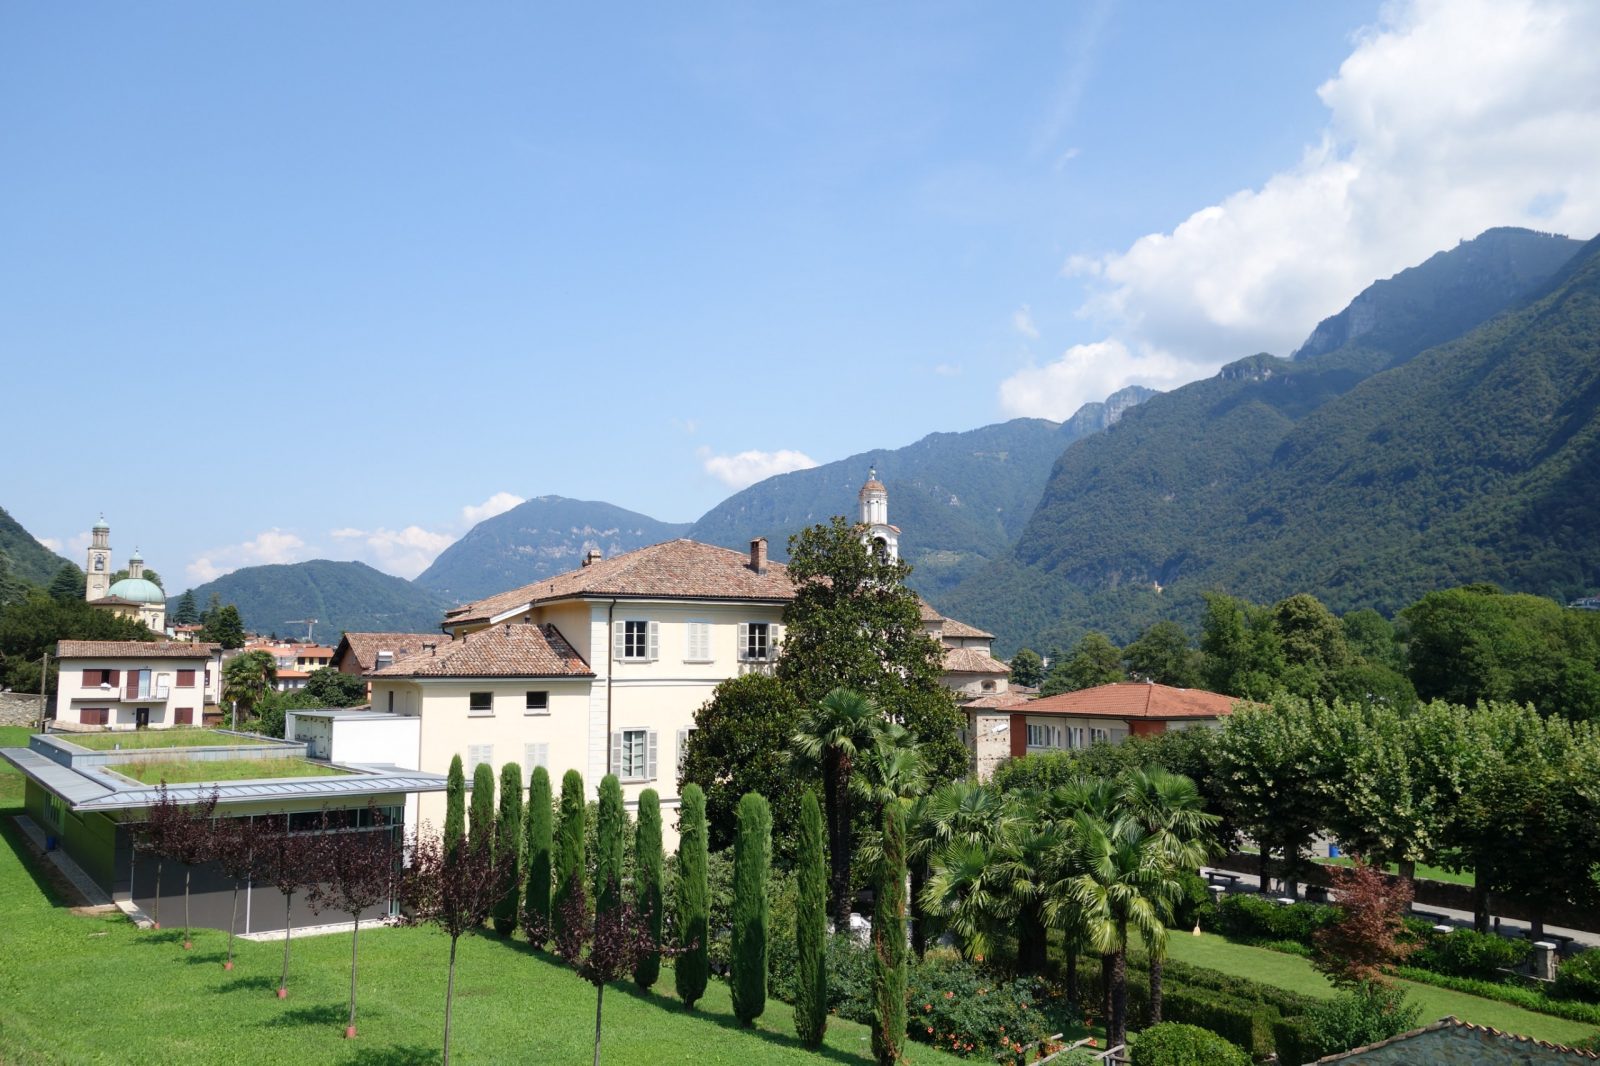 Steger Center, Riva San Vitale, Canton Ticino, Switzerland